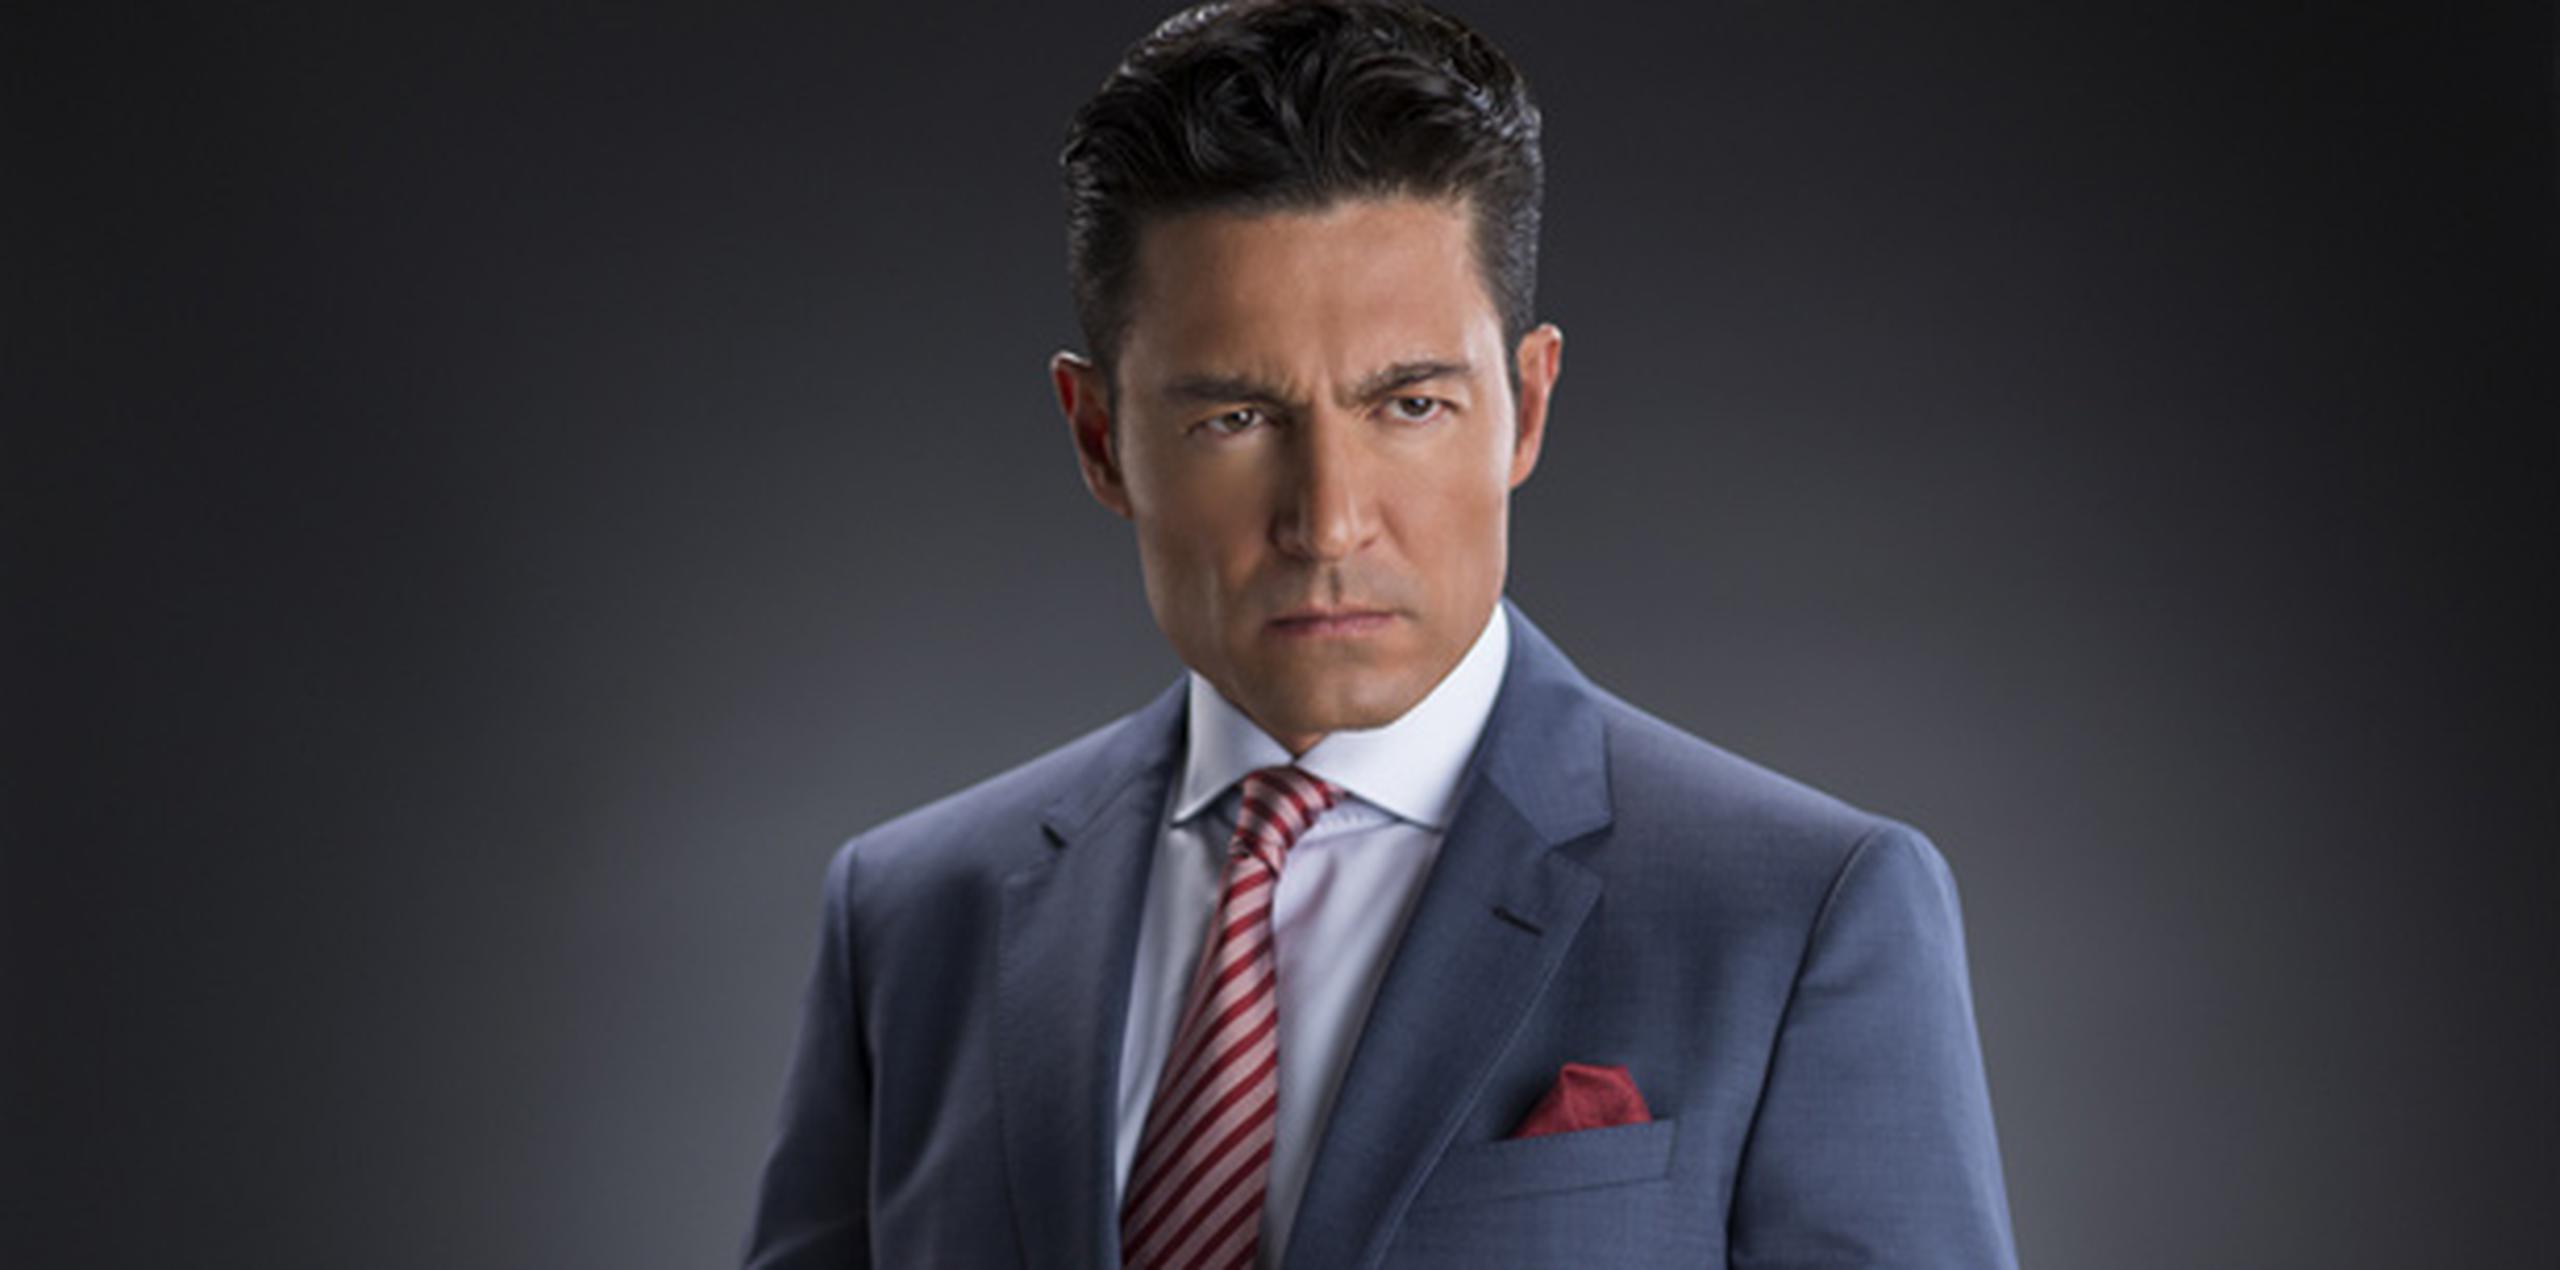 Fernando Colunga es uno de los protagonistas de la telenovela "Pasión y Poder". (Suministrada)